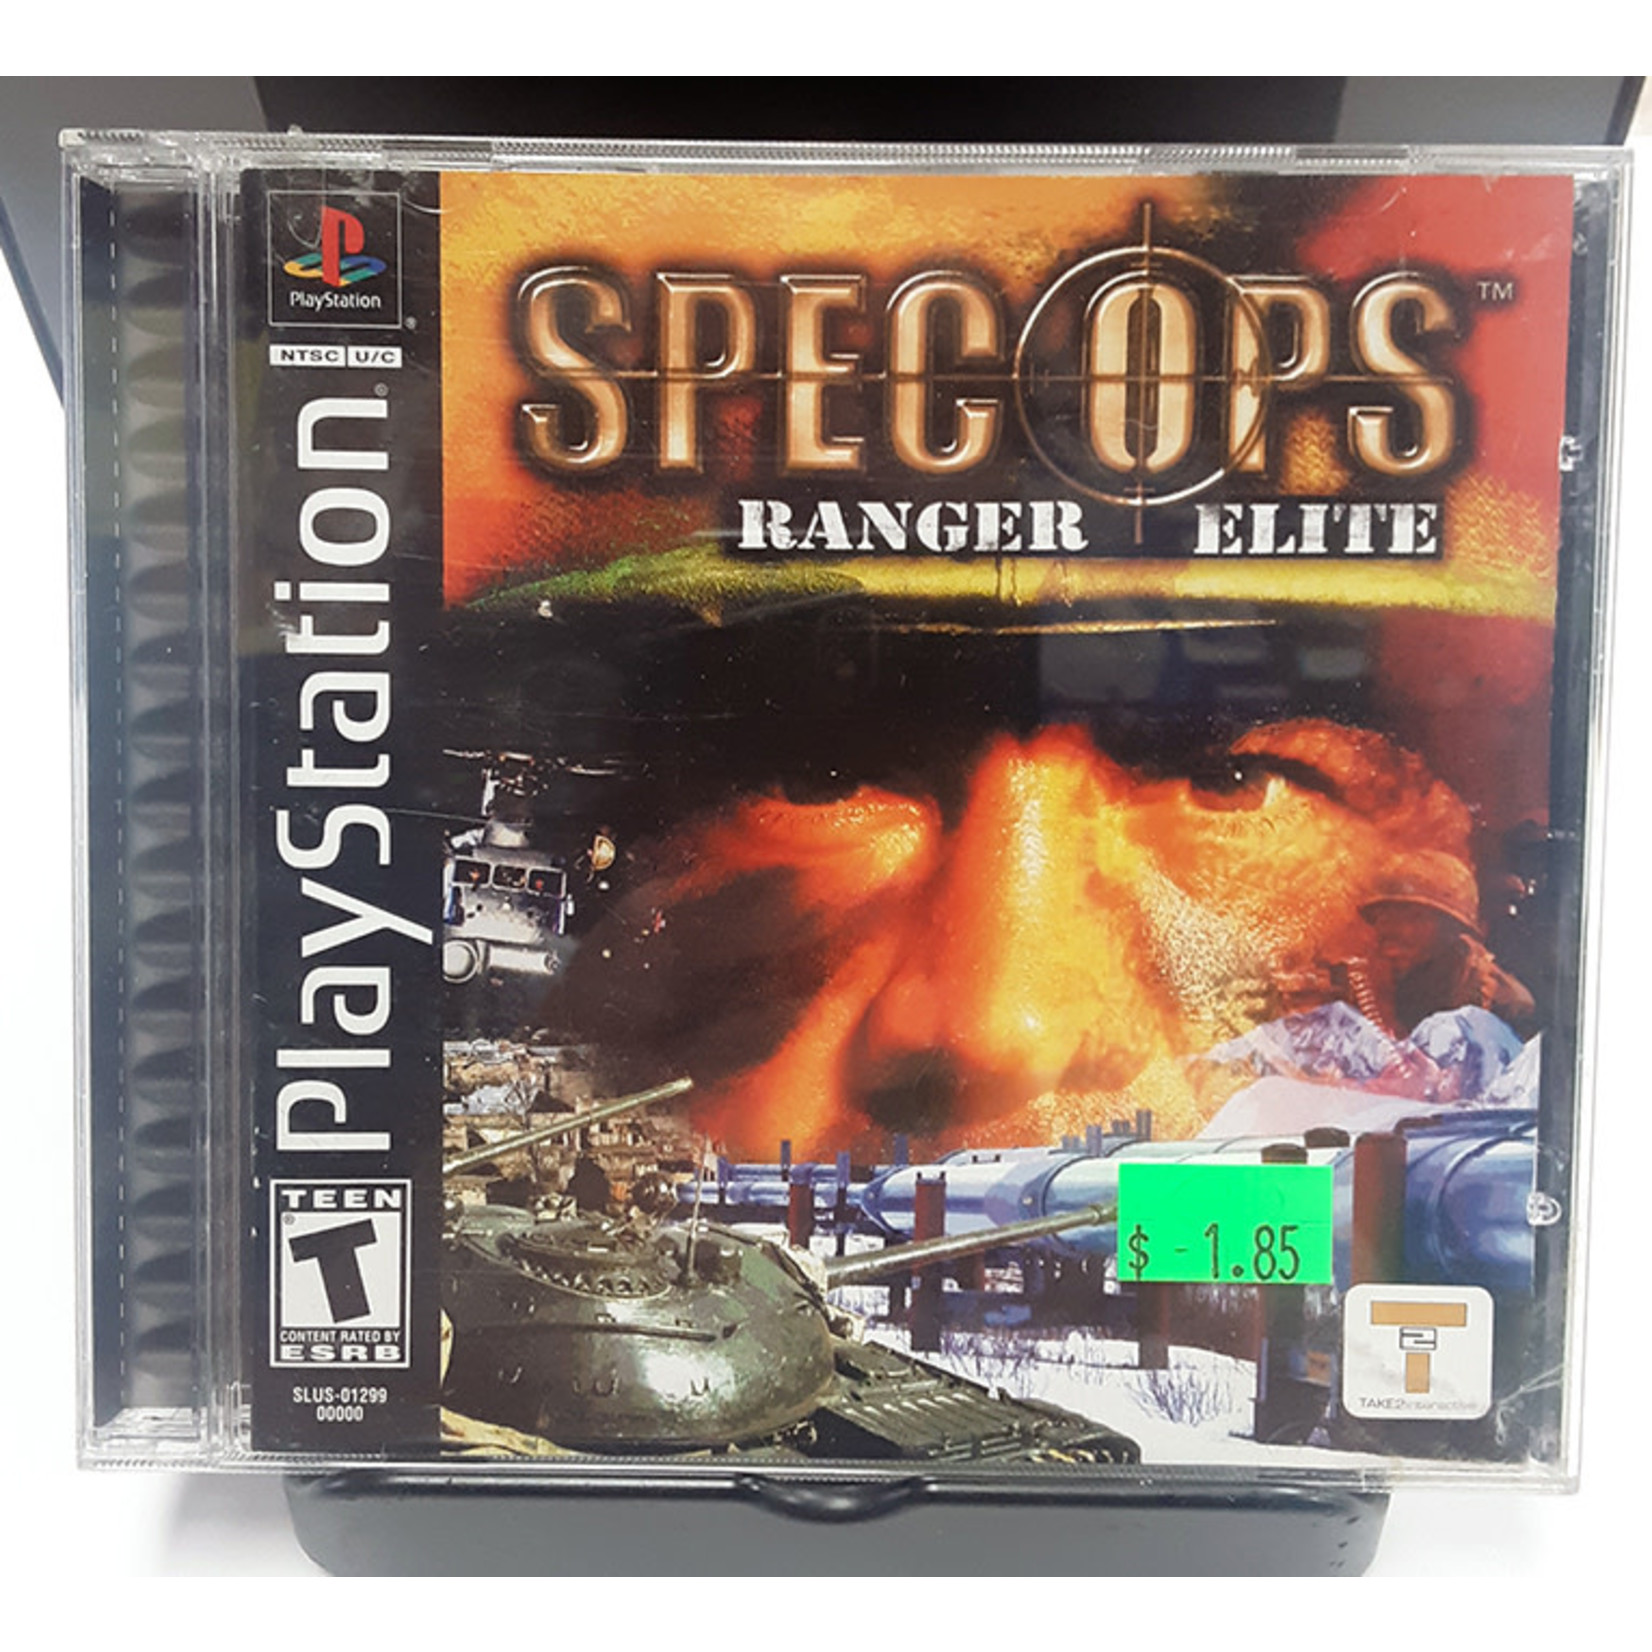 ps1u-spec ops: ranger elite